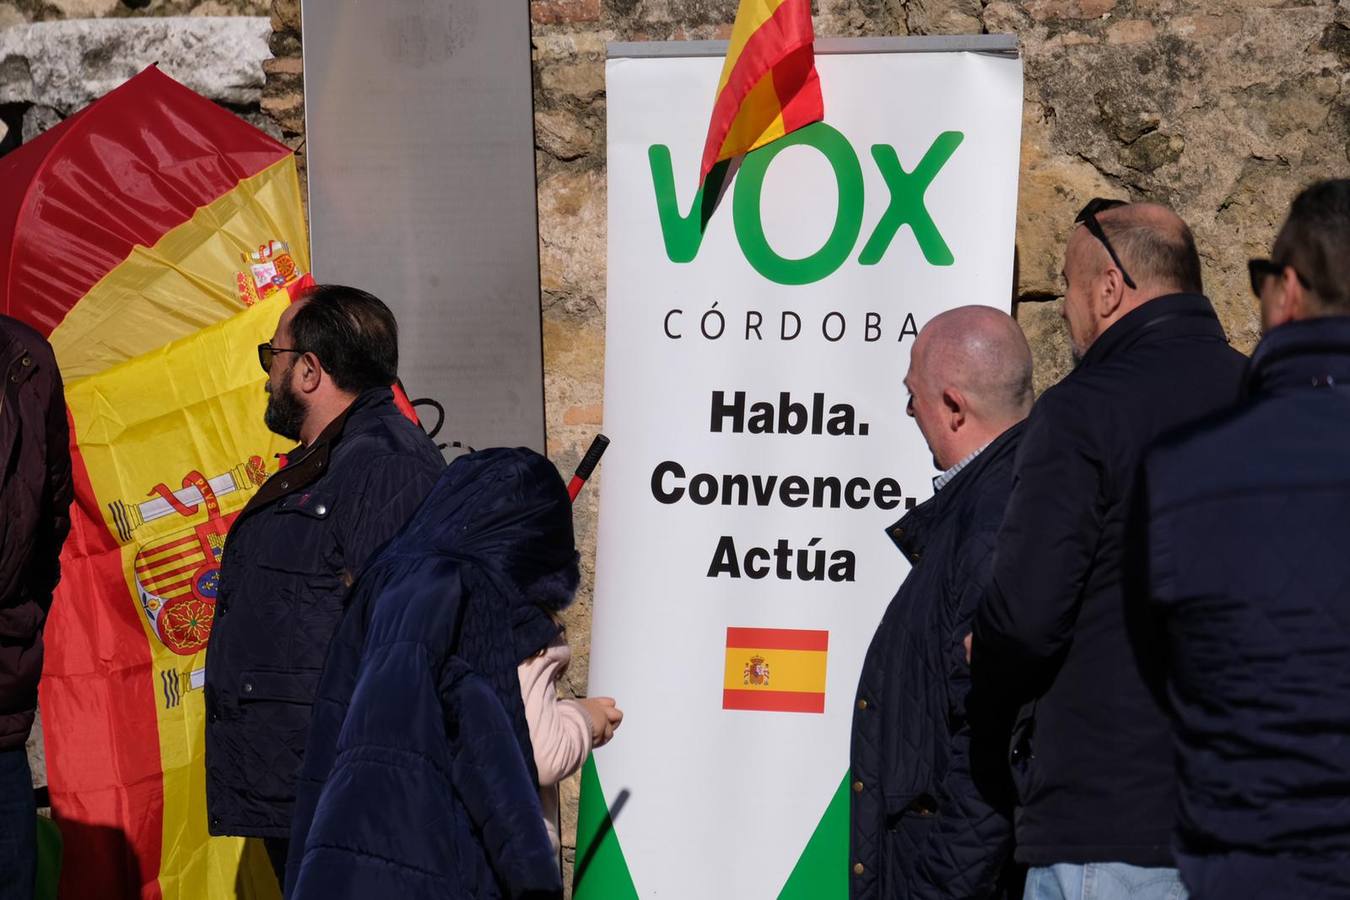 La concentración de VOX en Córdoba, en imágenes